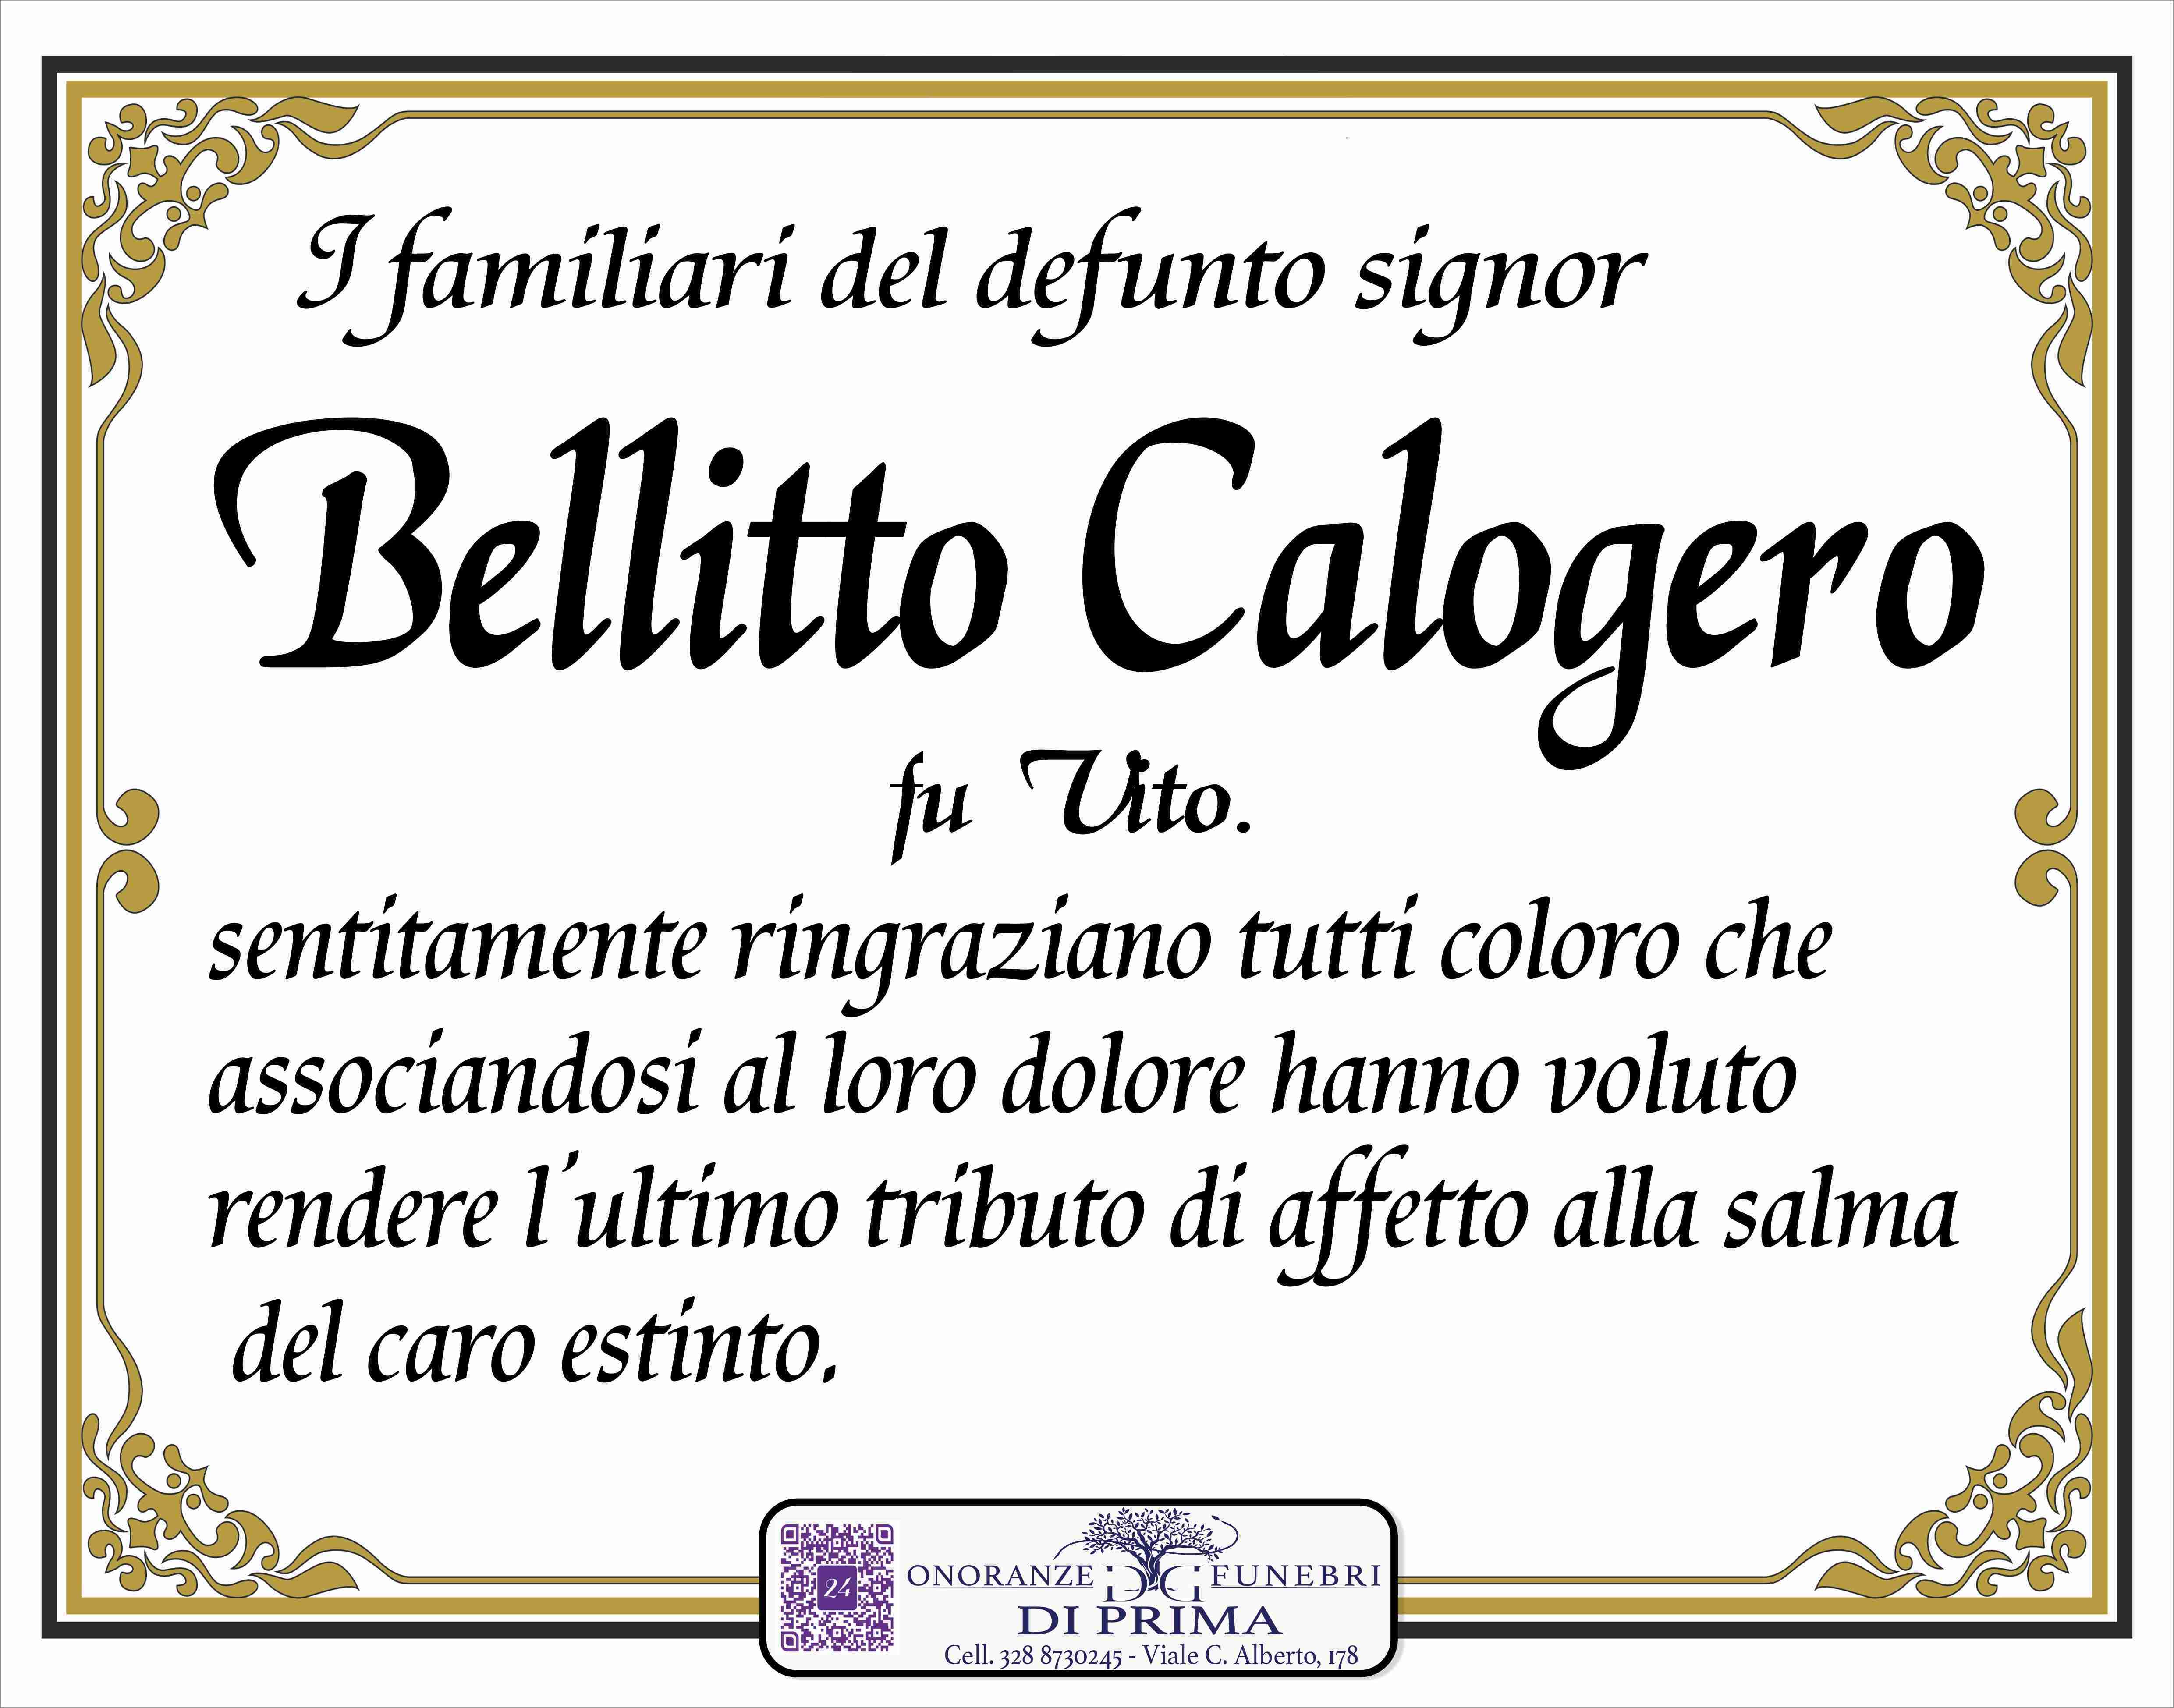 Calogero Bellitto